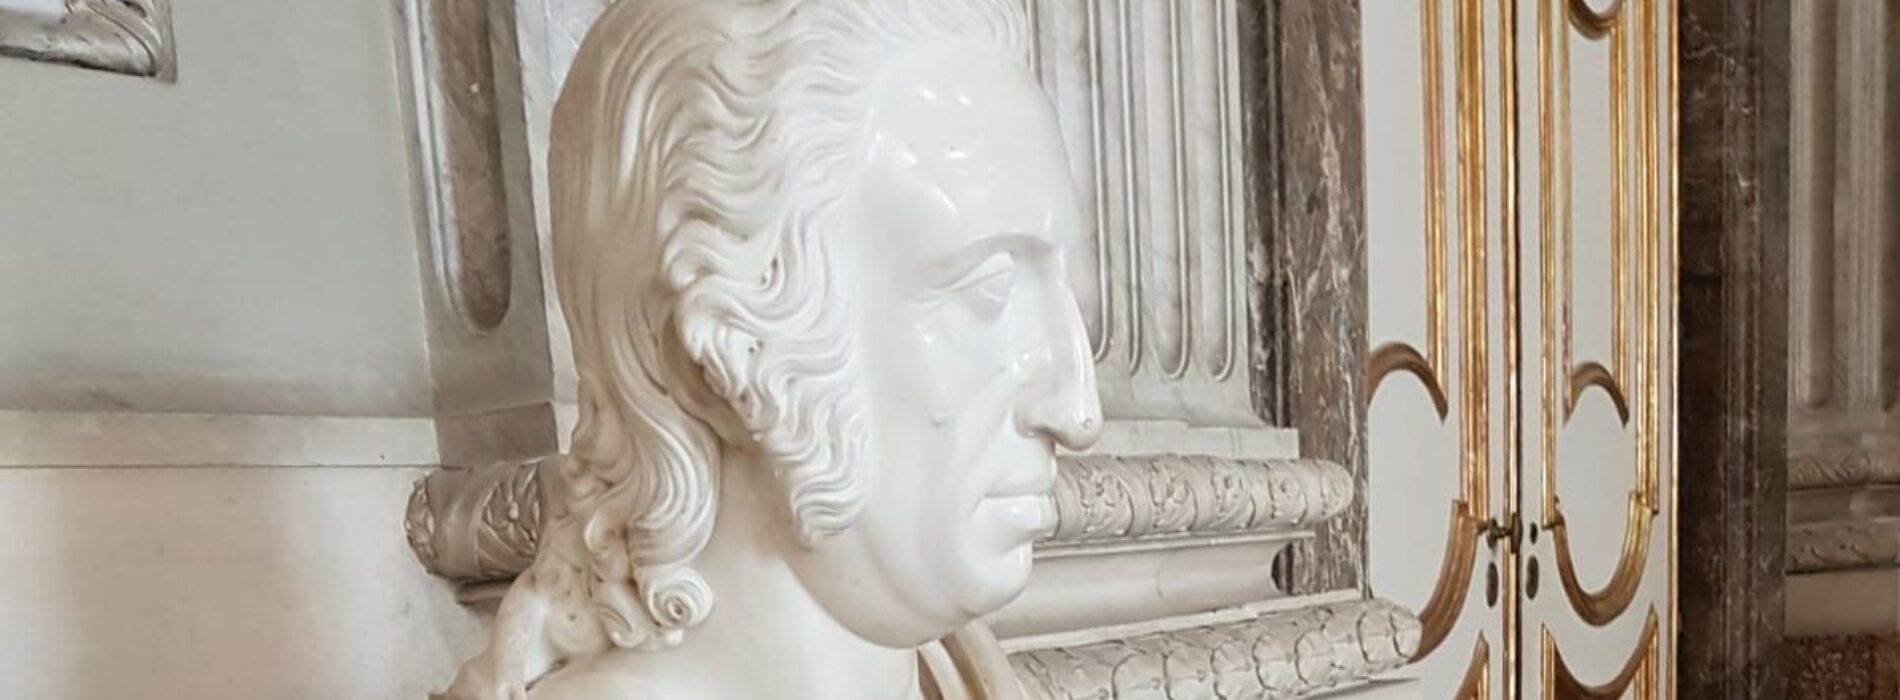 Reggia di Caserta, Ferdinando I di Borbone ritratto dal Canova